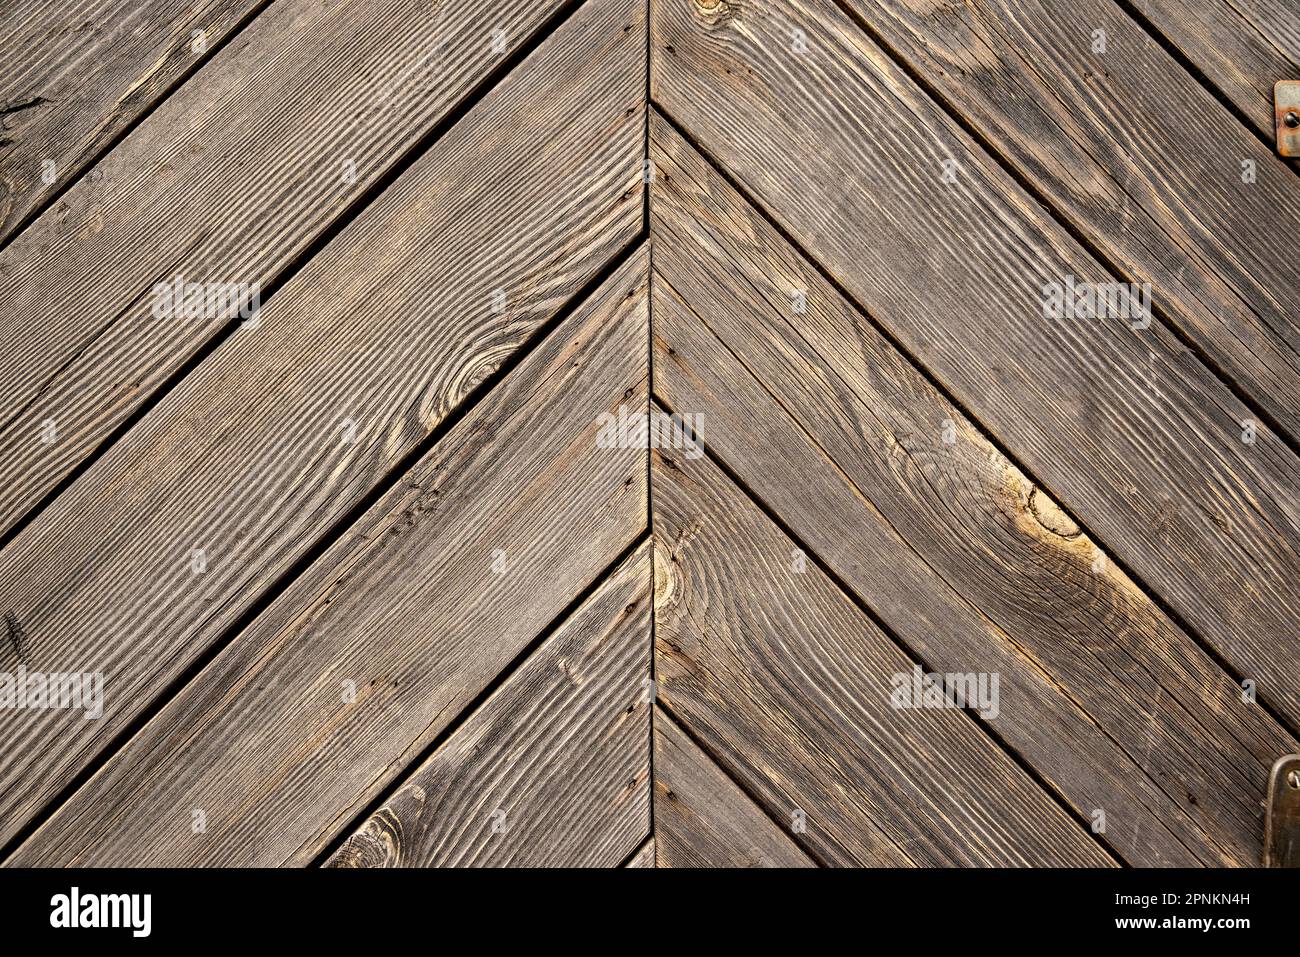 Diagonale gemusterte Holzhintergrundstruktur, die die Bretter der Tür eines traditionellen isländischen Rasenhauses in Skaftafell zeigt Stockfoto